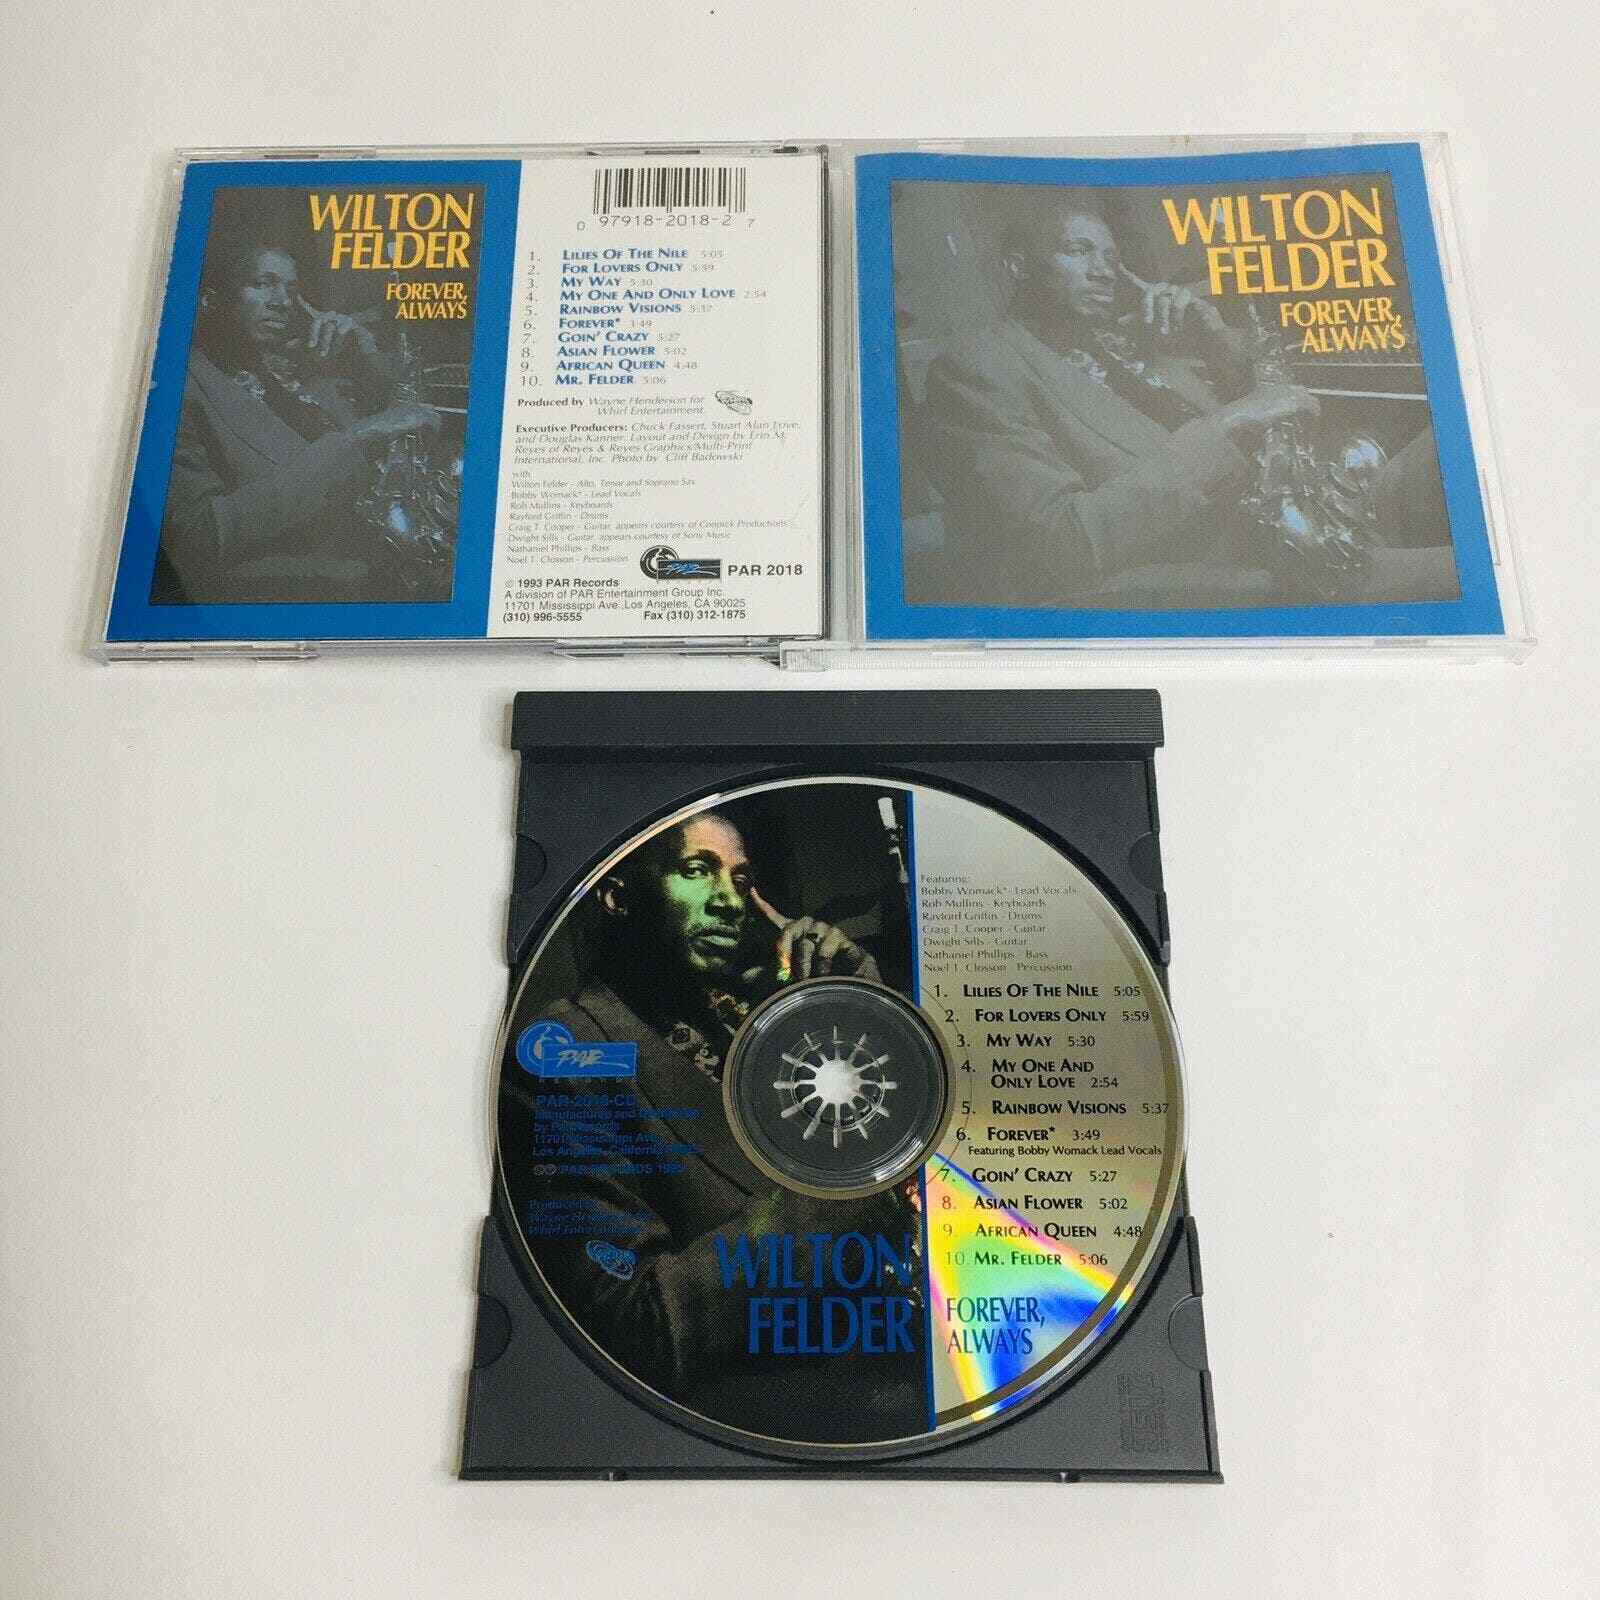 Forever Always Wilton Felder cd 1993 Jazz